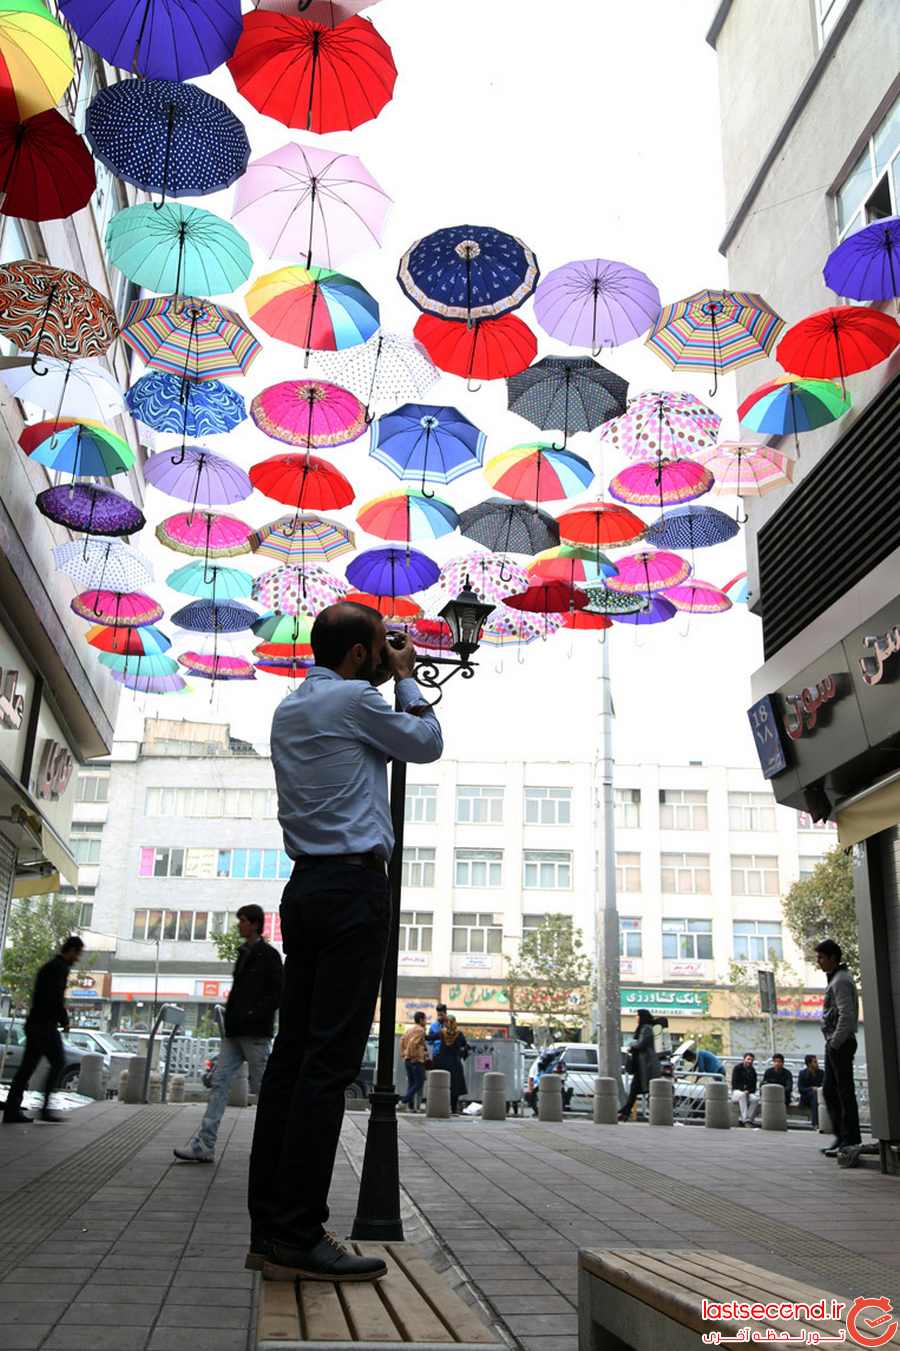  کوچه چتری، پاتوقی برای گرفتن عکس های یادگاری  